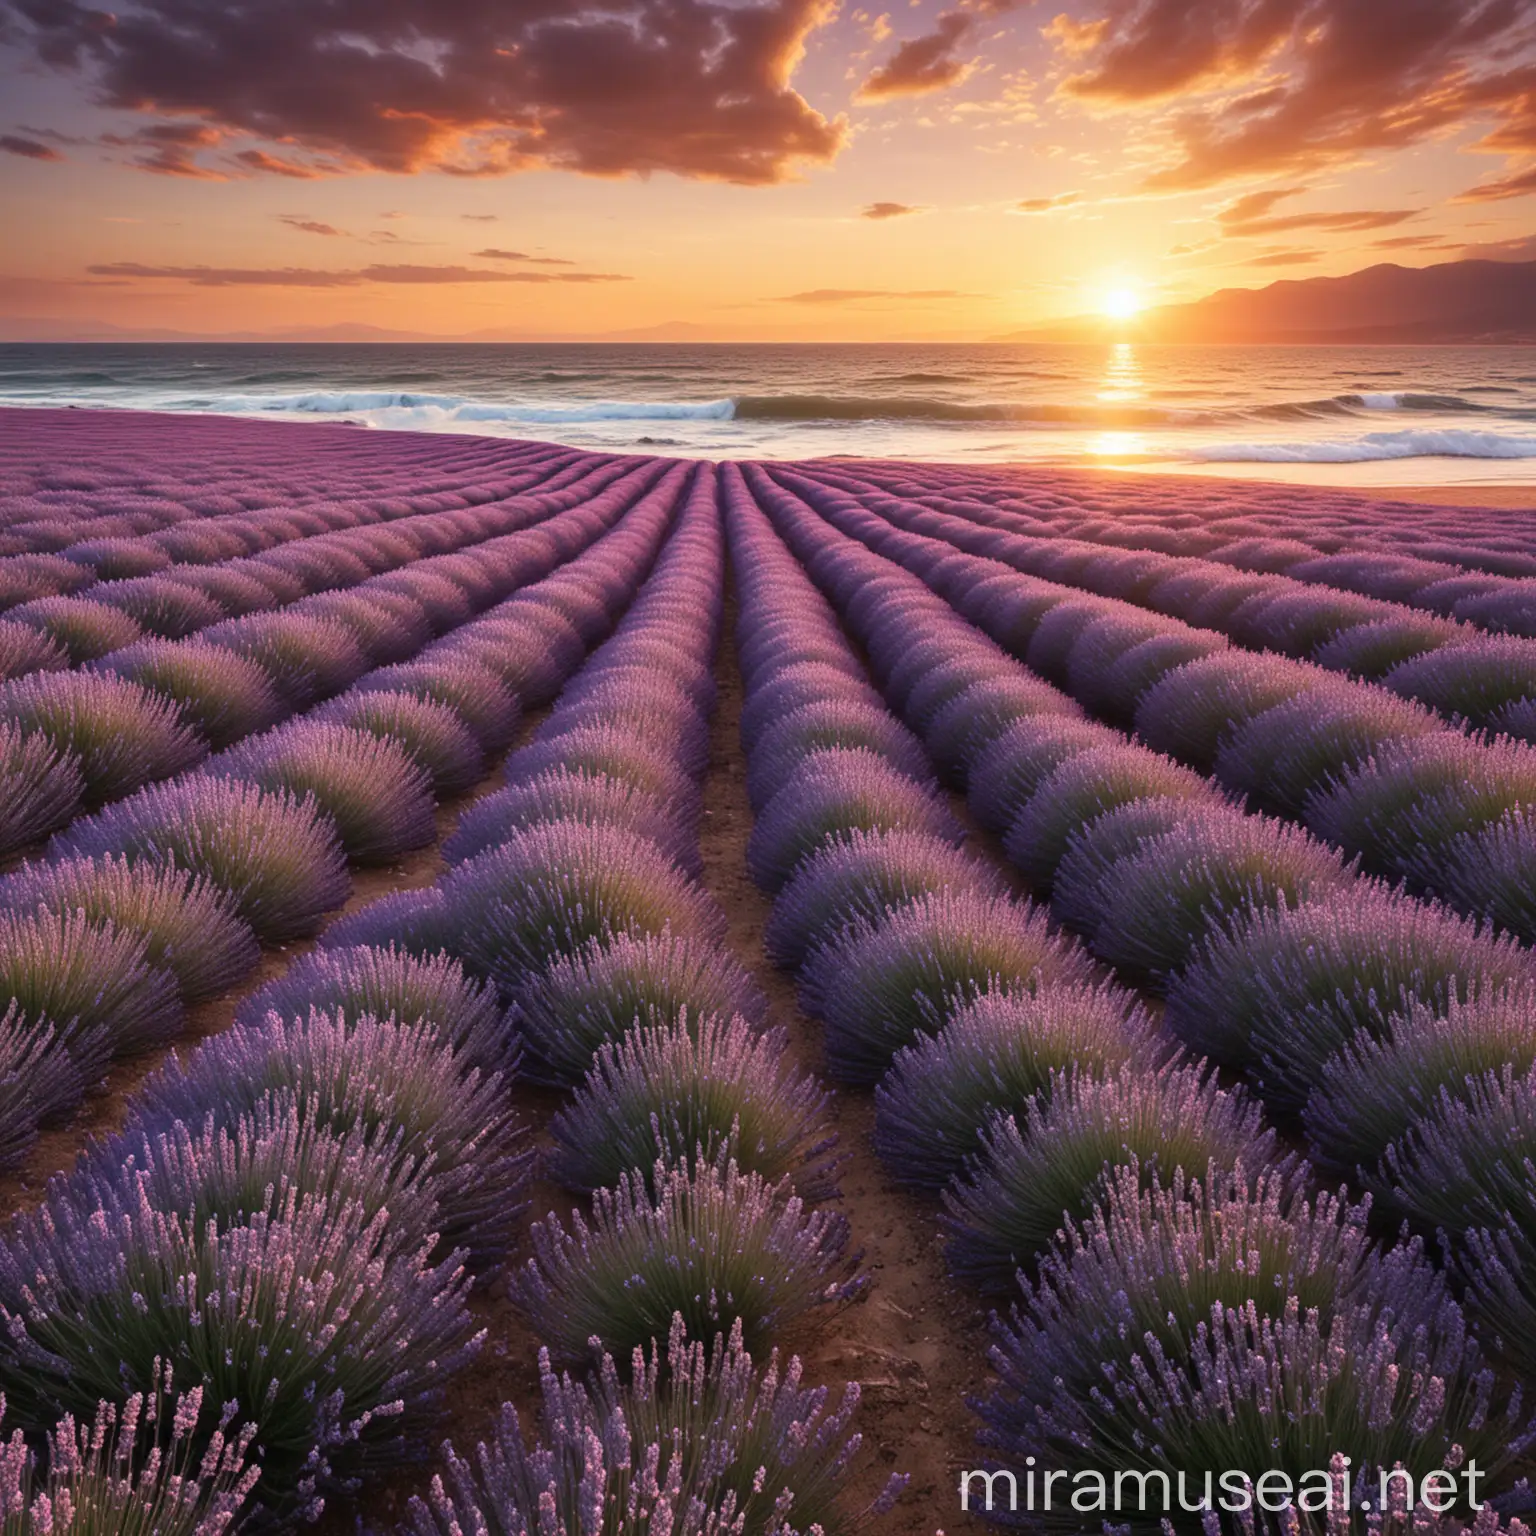 Lavendelfeld am  viel Meer mit einem Sonnenuntergang und  extrem
 starken
Wellen